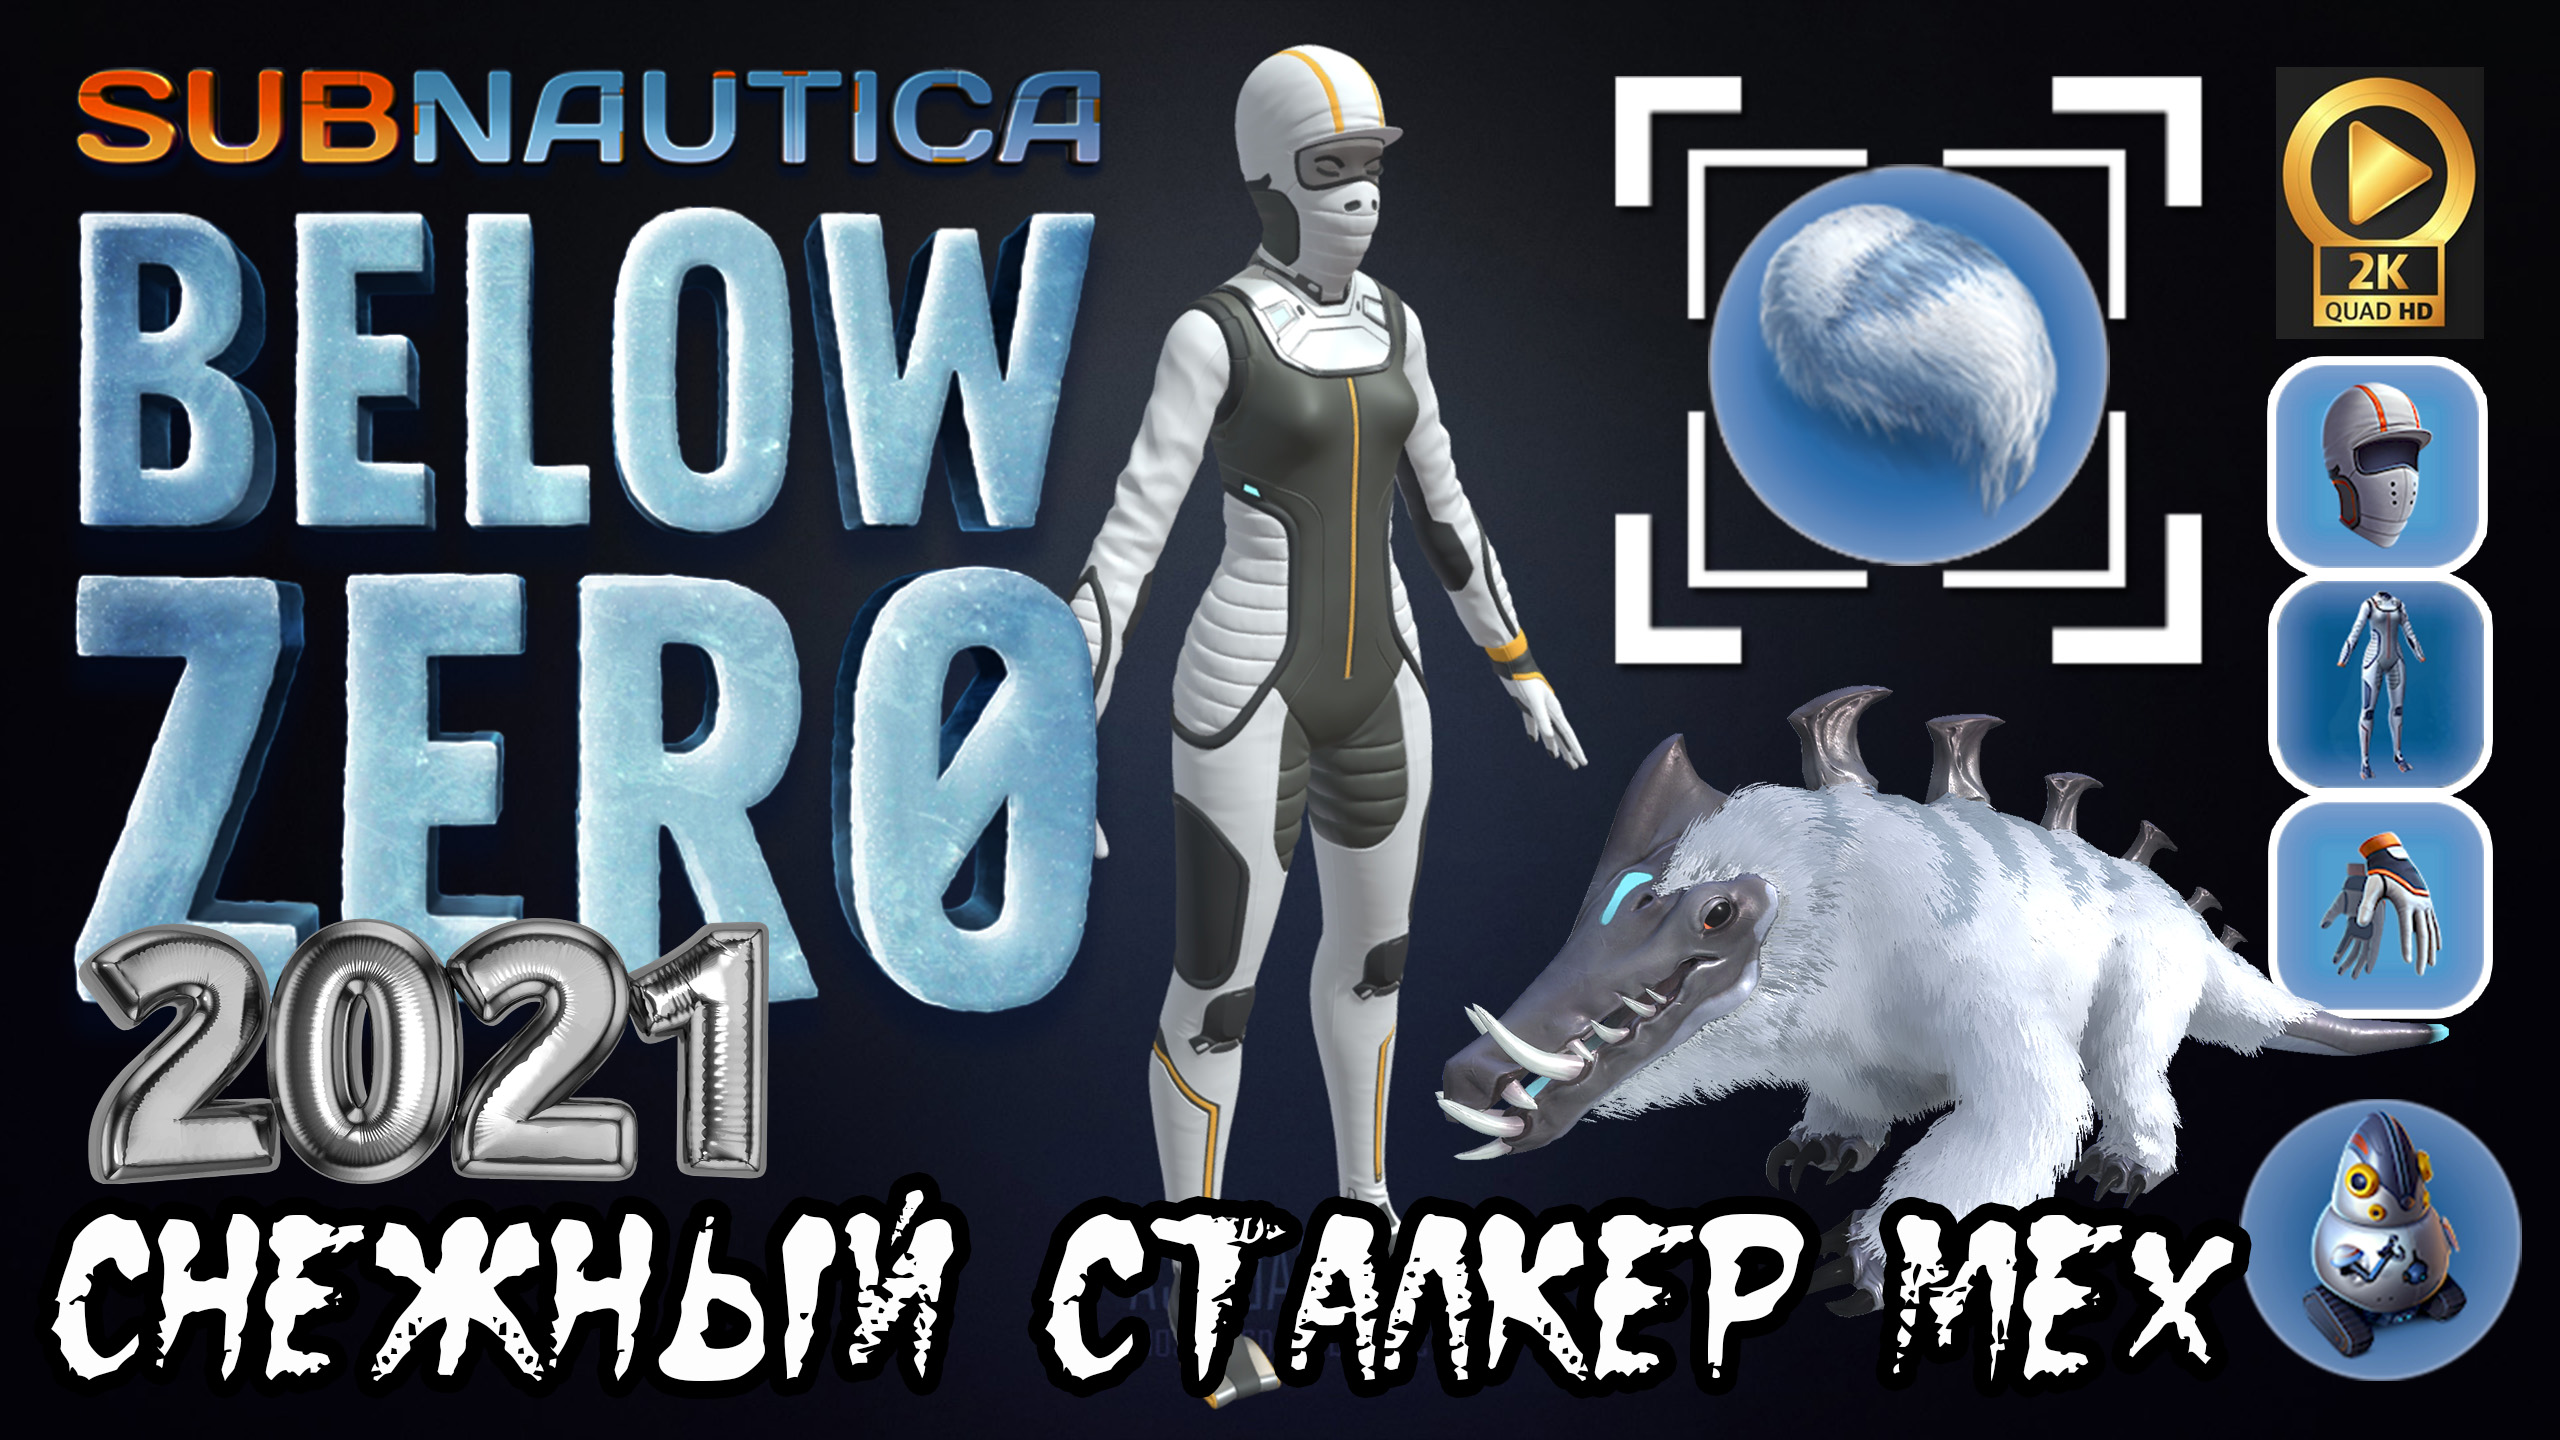 ✅ Subnautica Below Zero 2021 утепленный костюм [стрижем зверя]